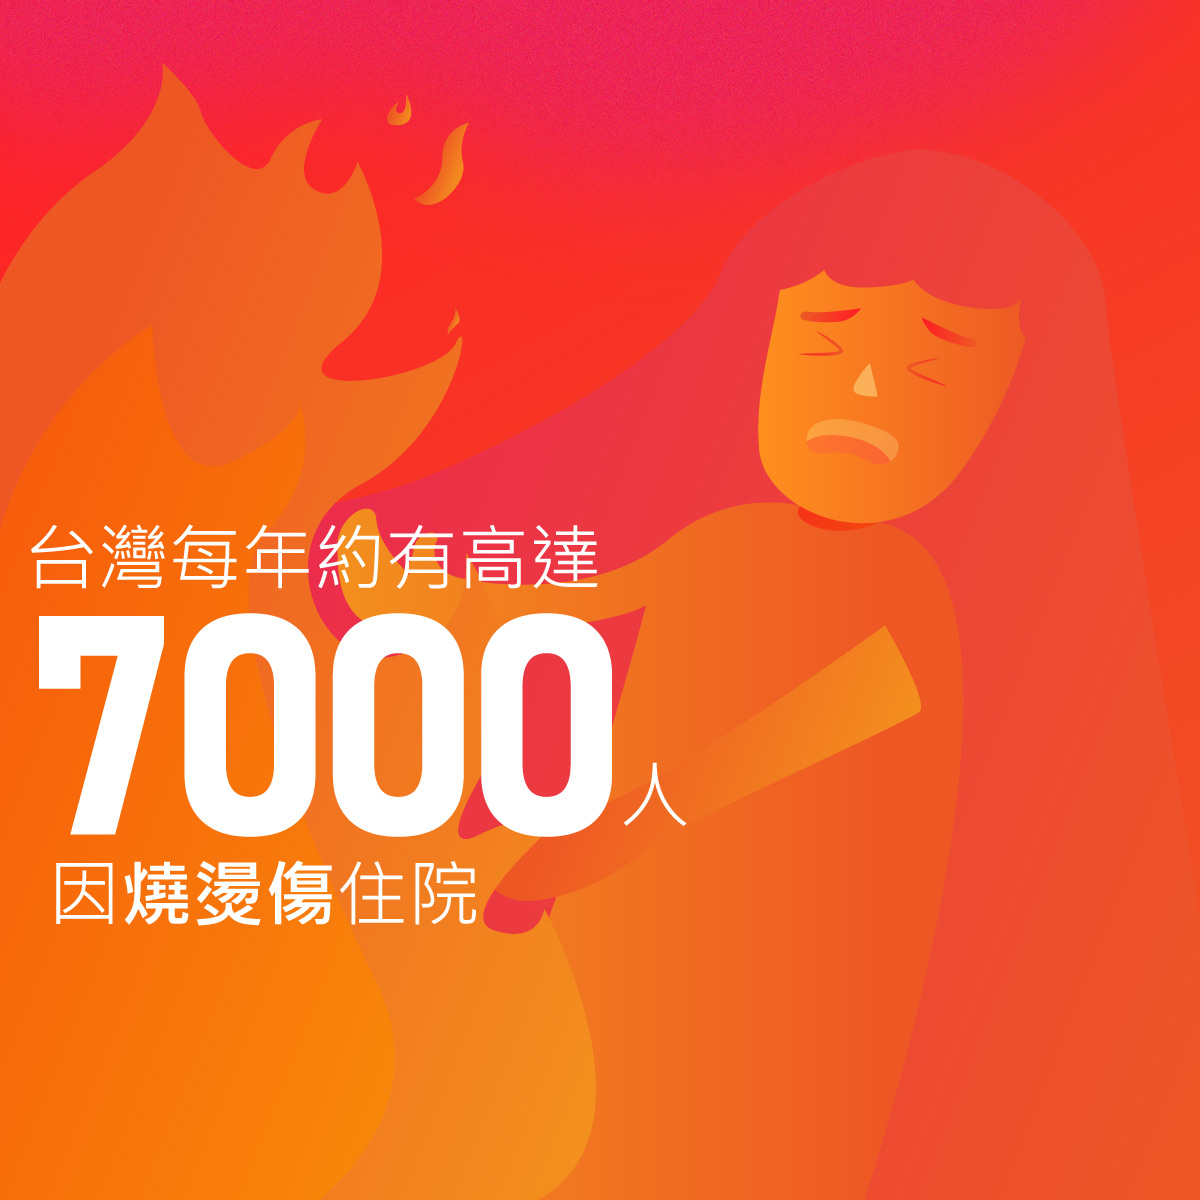 台灣每年約有高達7000人因燒燙傷住院